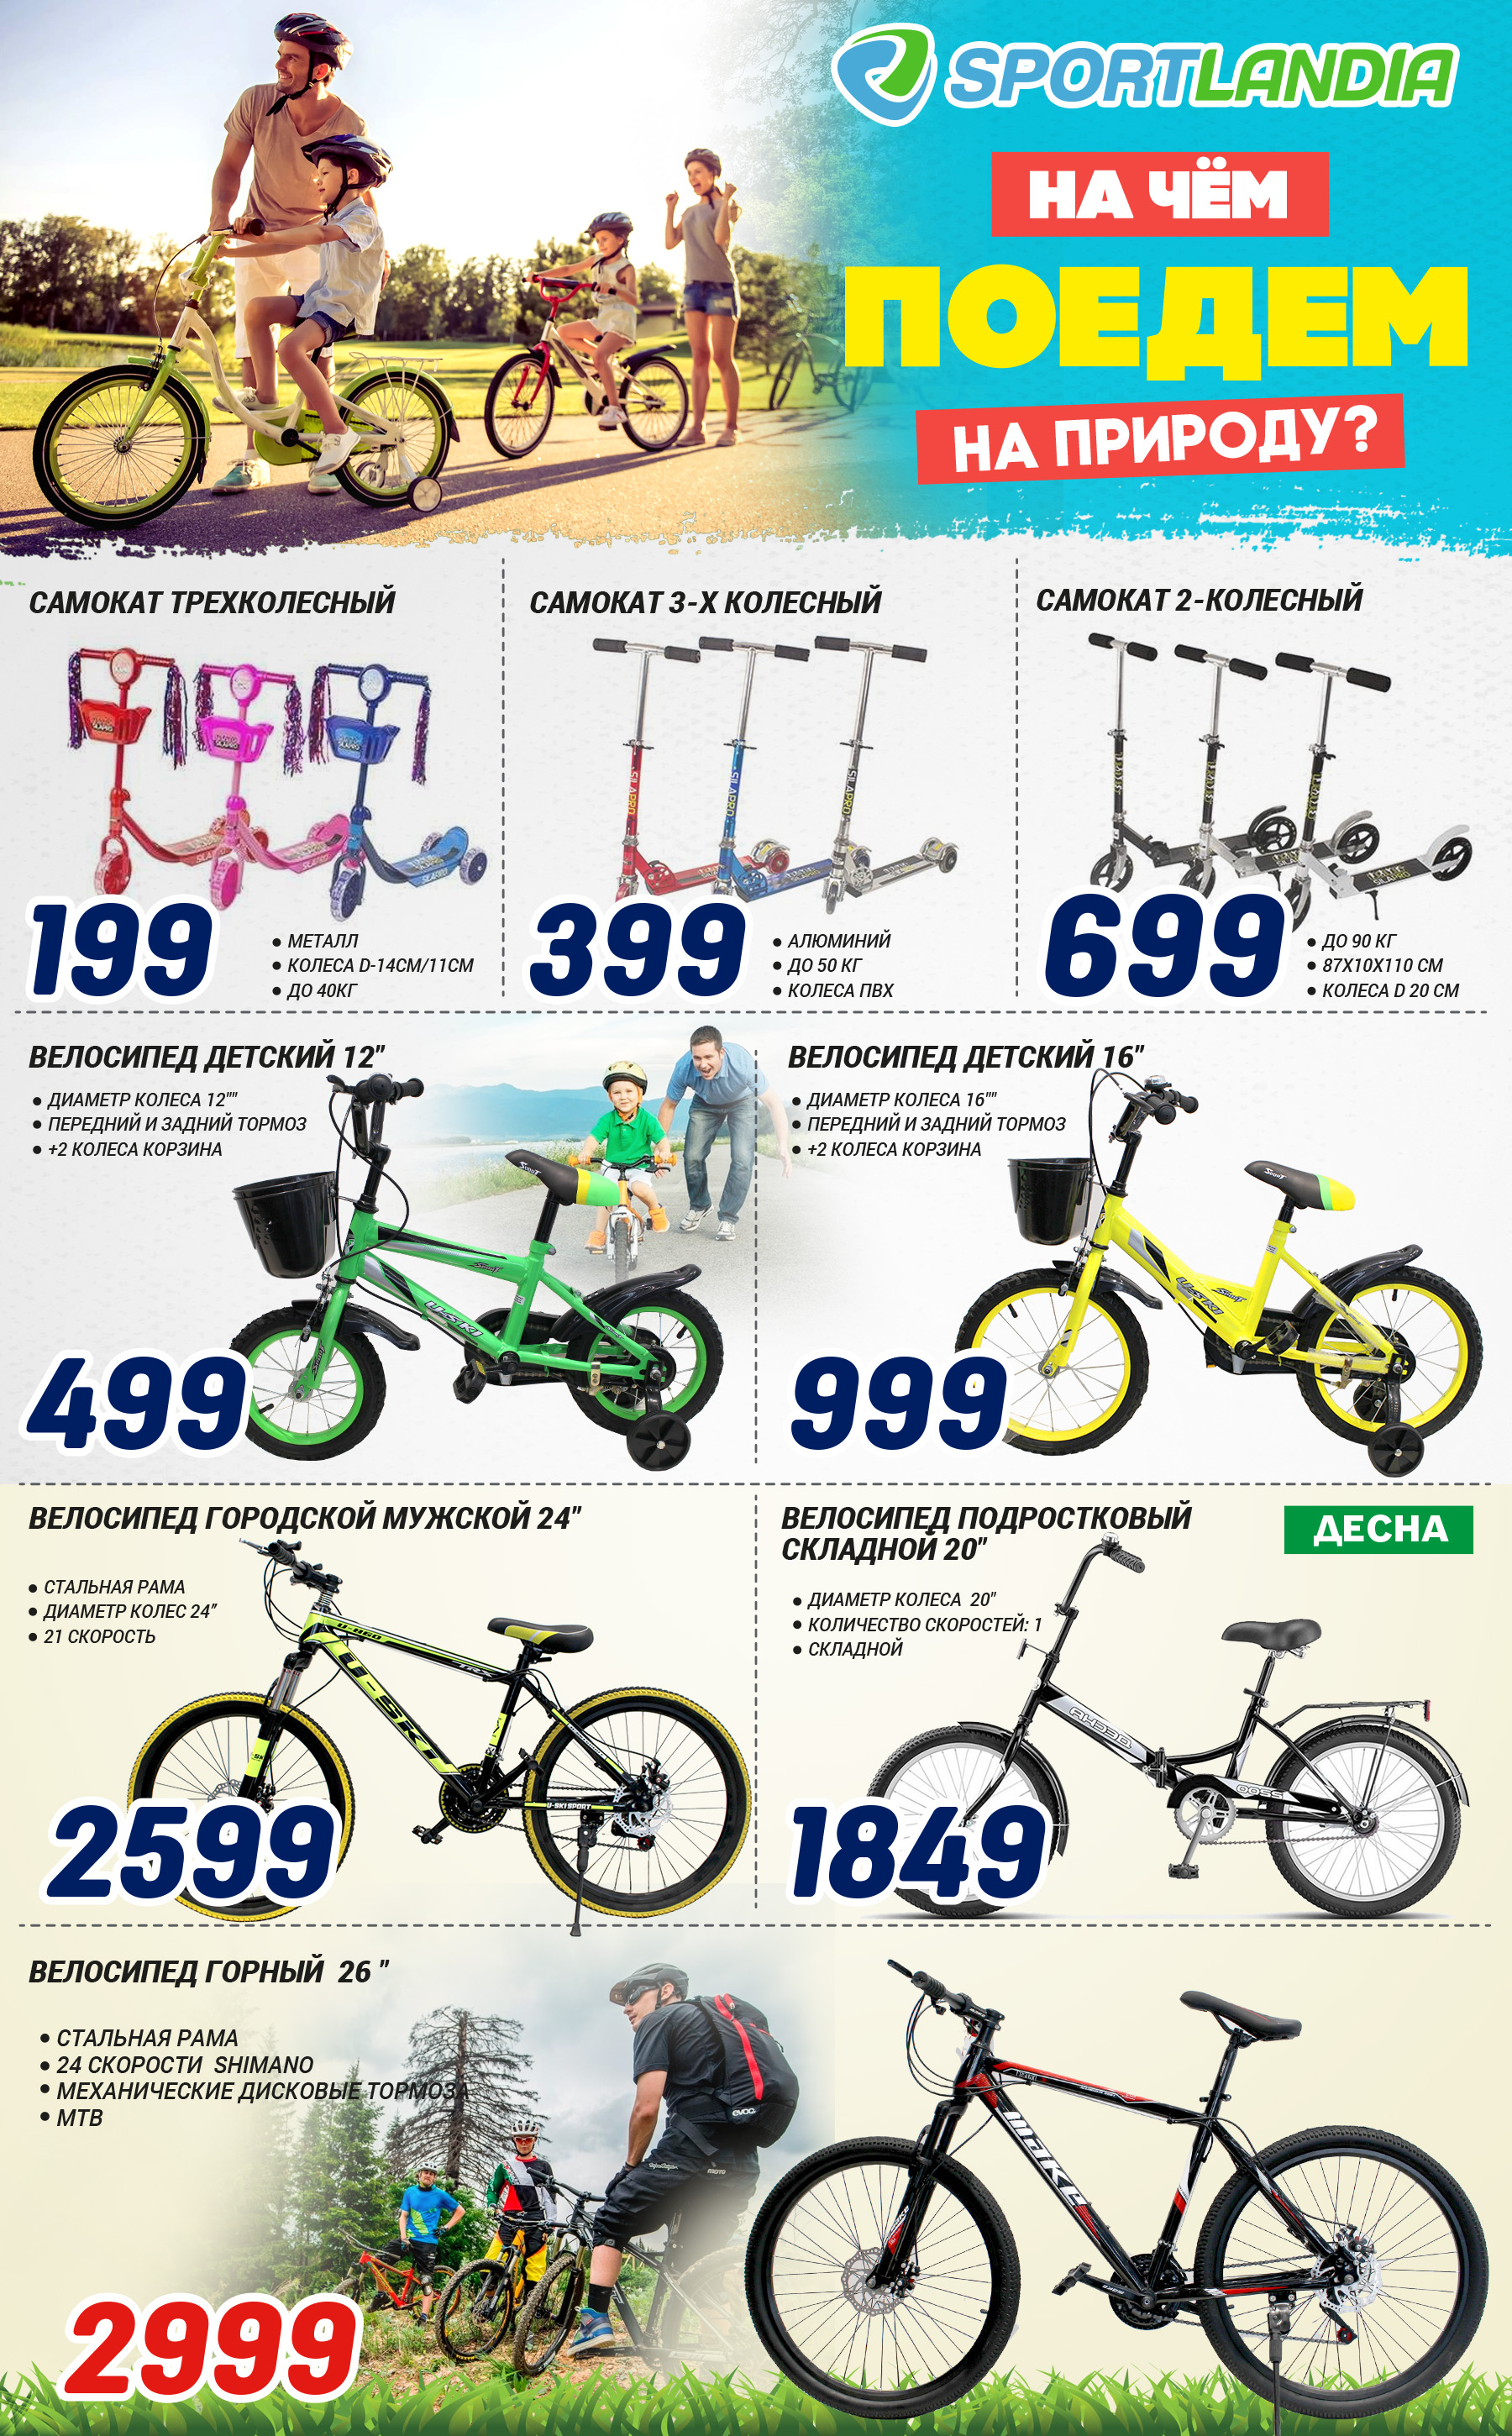 купить детский велосипед молдова, купить велосипед кишинев, купить ролики кишинев, спортландия кишинев